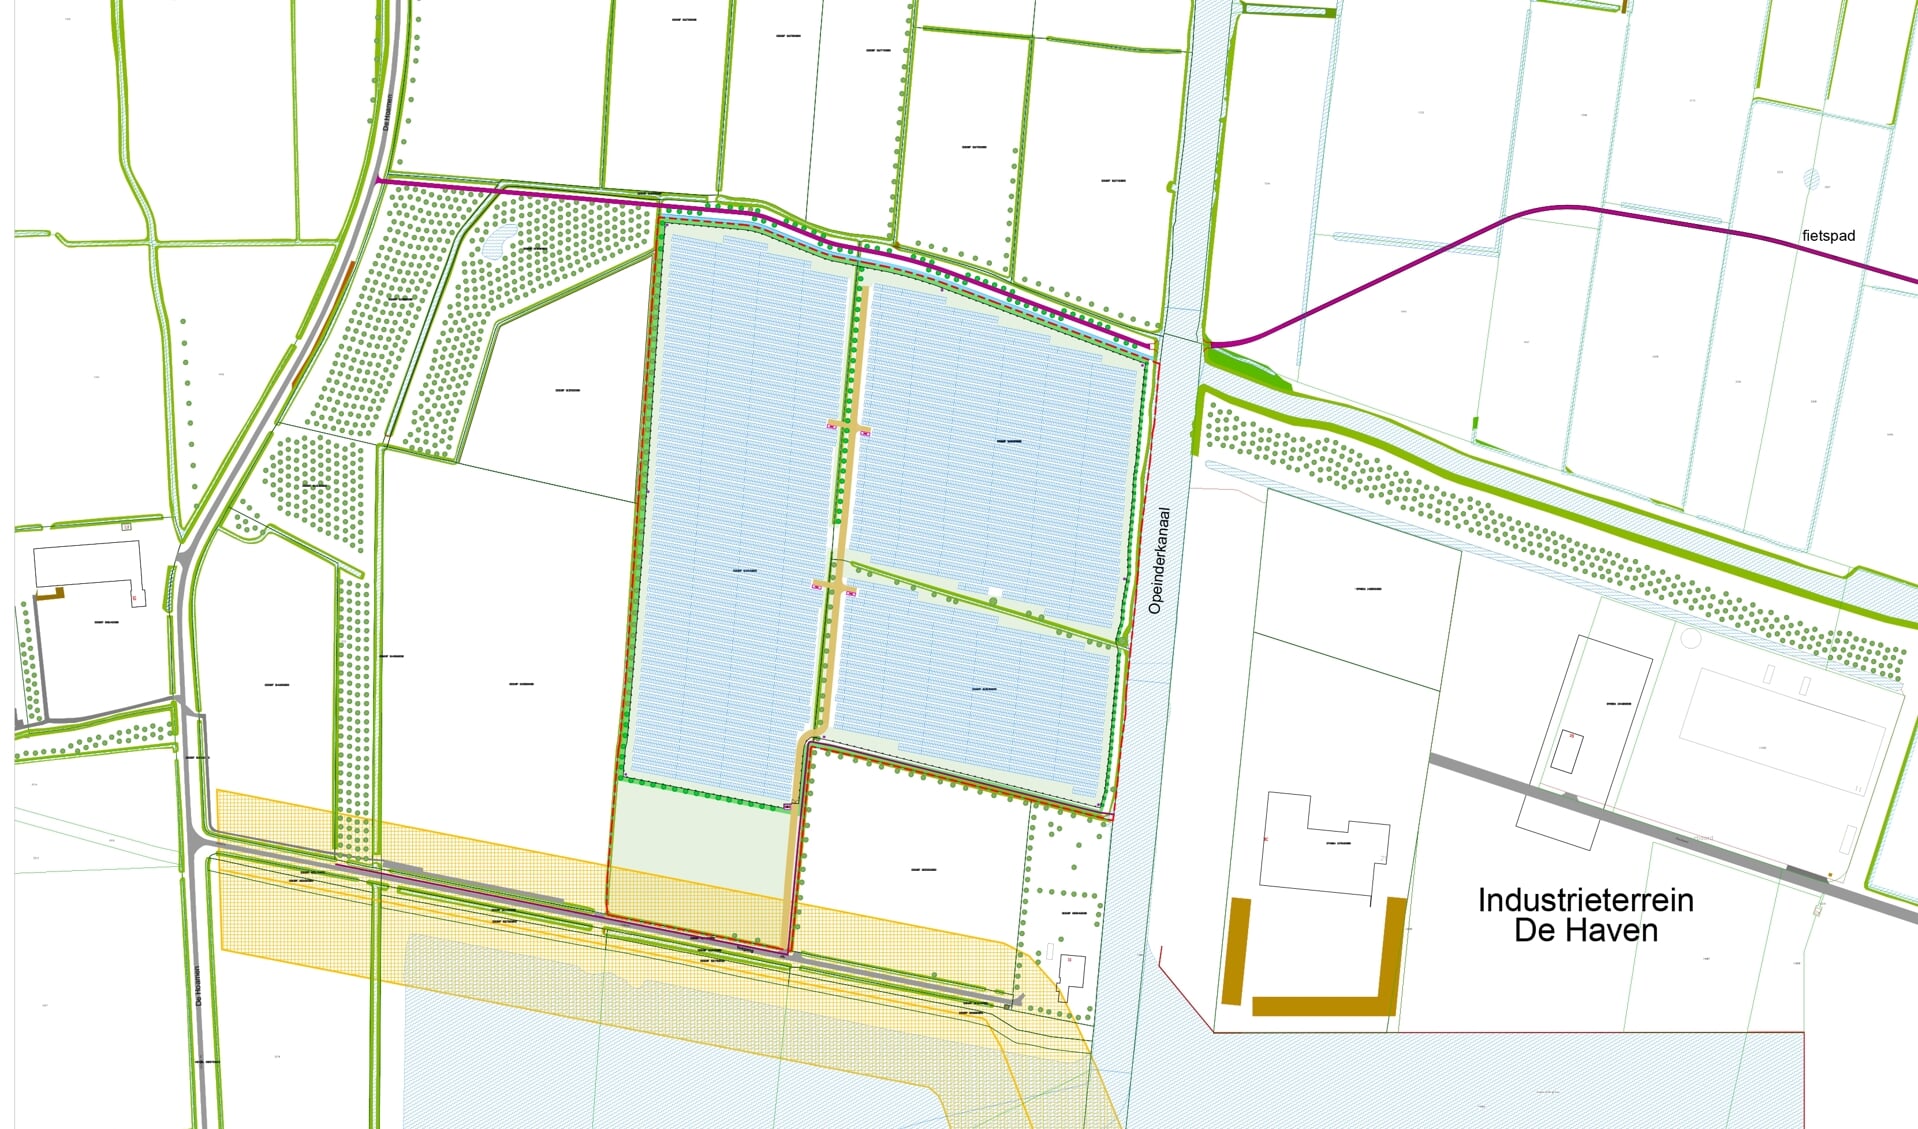 Het zonnepanelenpark (in lichtblauw) is gepland pal westelijk van industrieterrein De Haven.